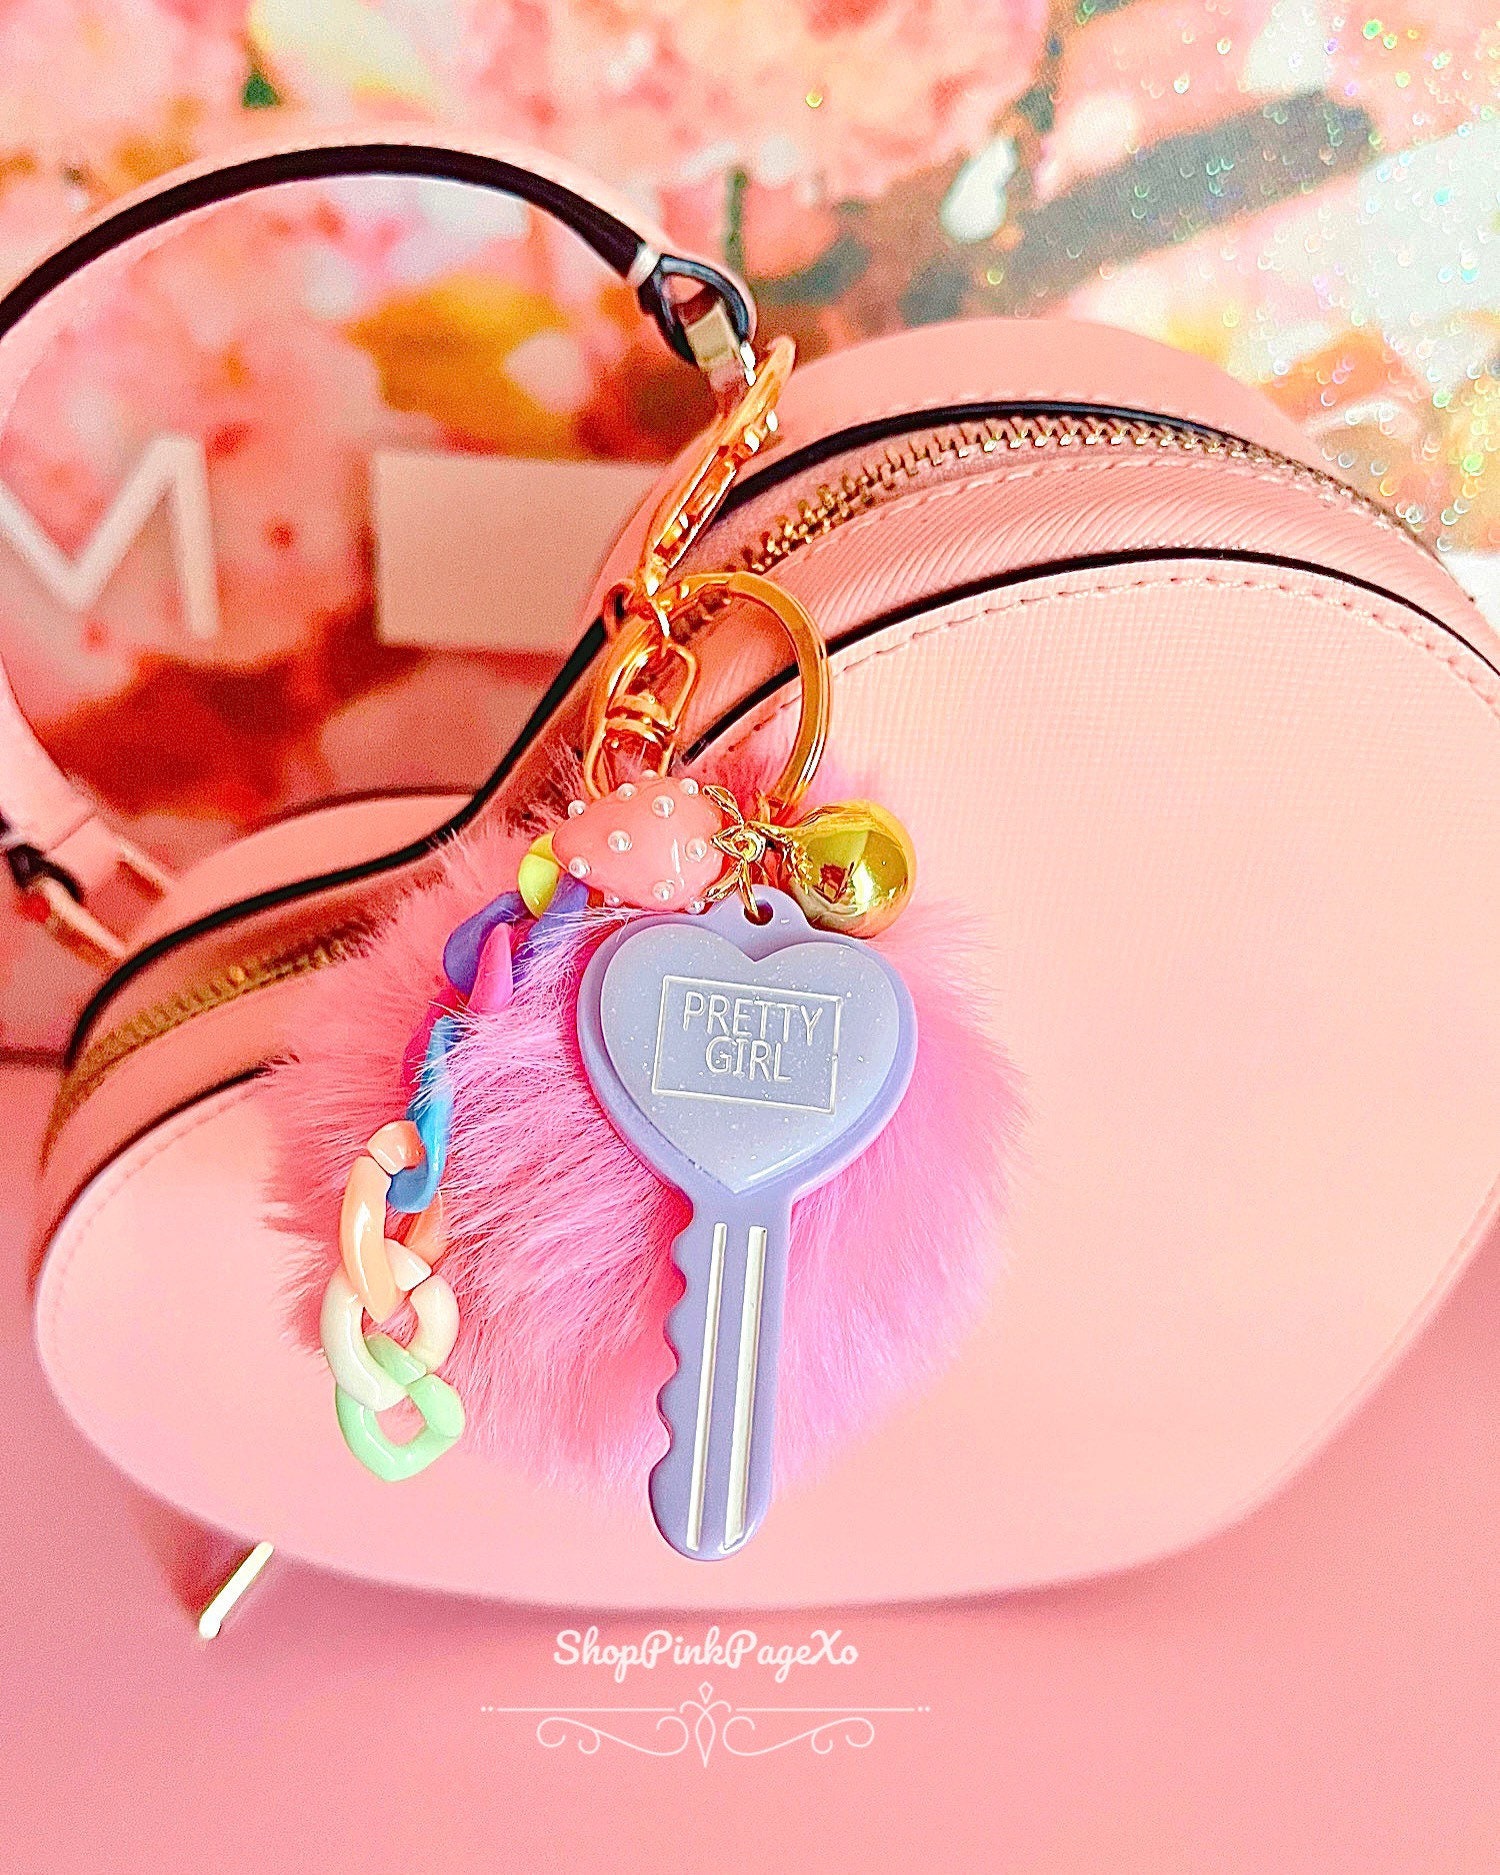 Plush glitter unicorn puff ball keychain accessory toy